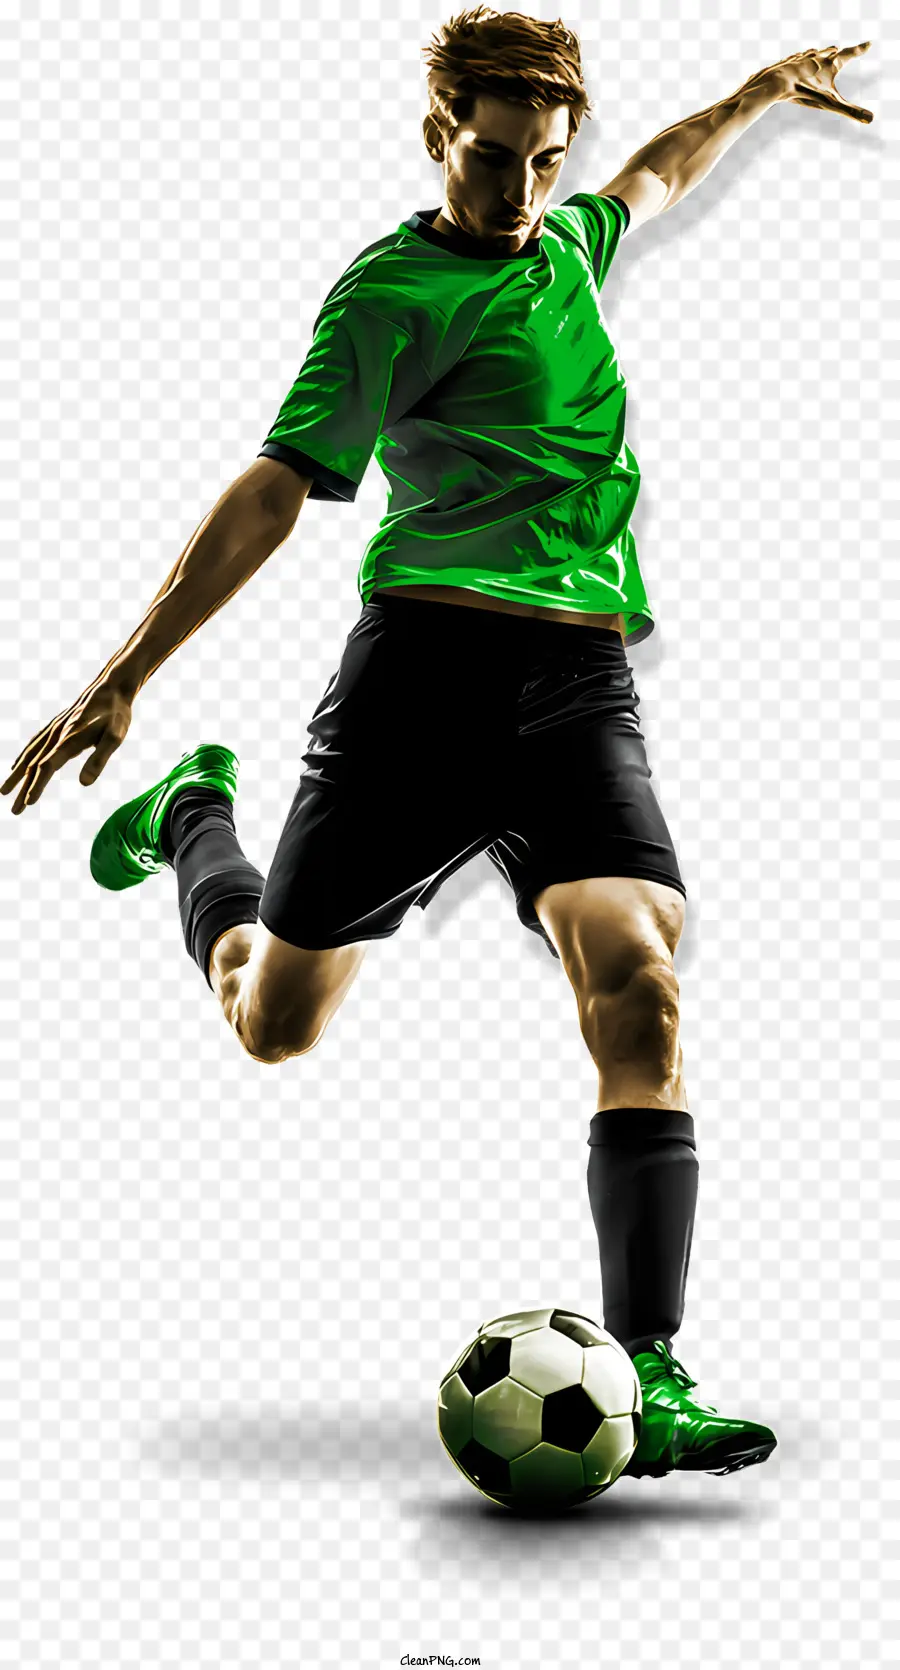 Sportfußball -Fußball Sportler - Mann tritt Fußballkugel in grünes Hemd